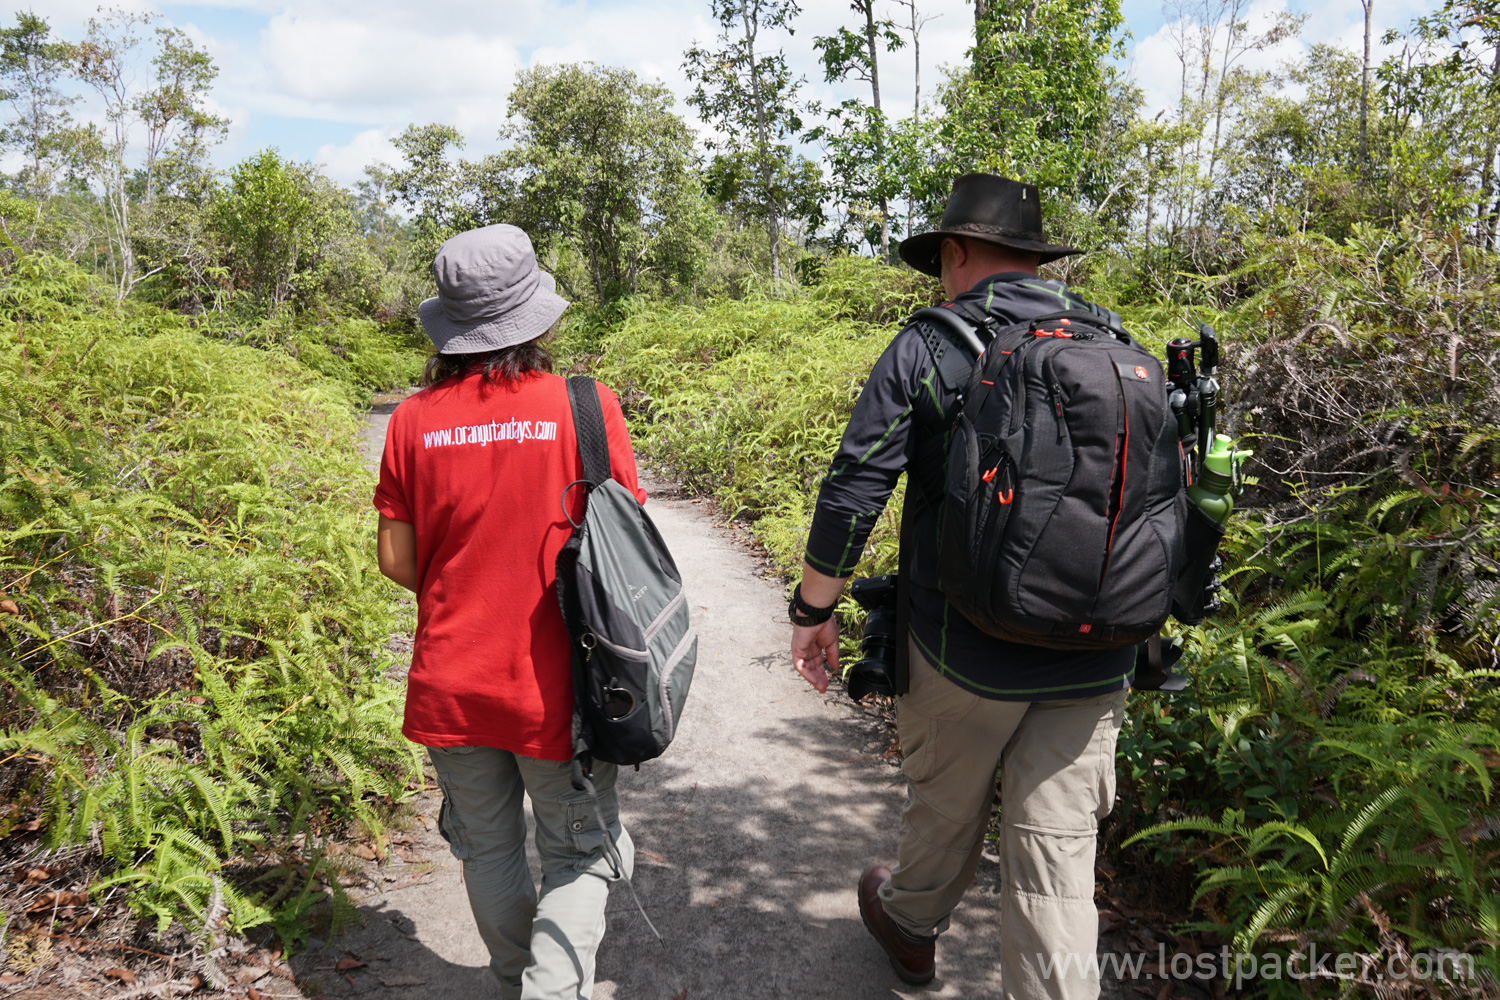 Sambil Trekking, banyak ilmu yang saya dapat dari penuturan guide di Taman Nasional Tanjung Puting